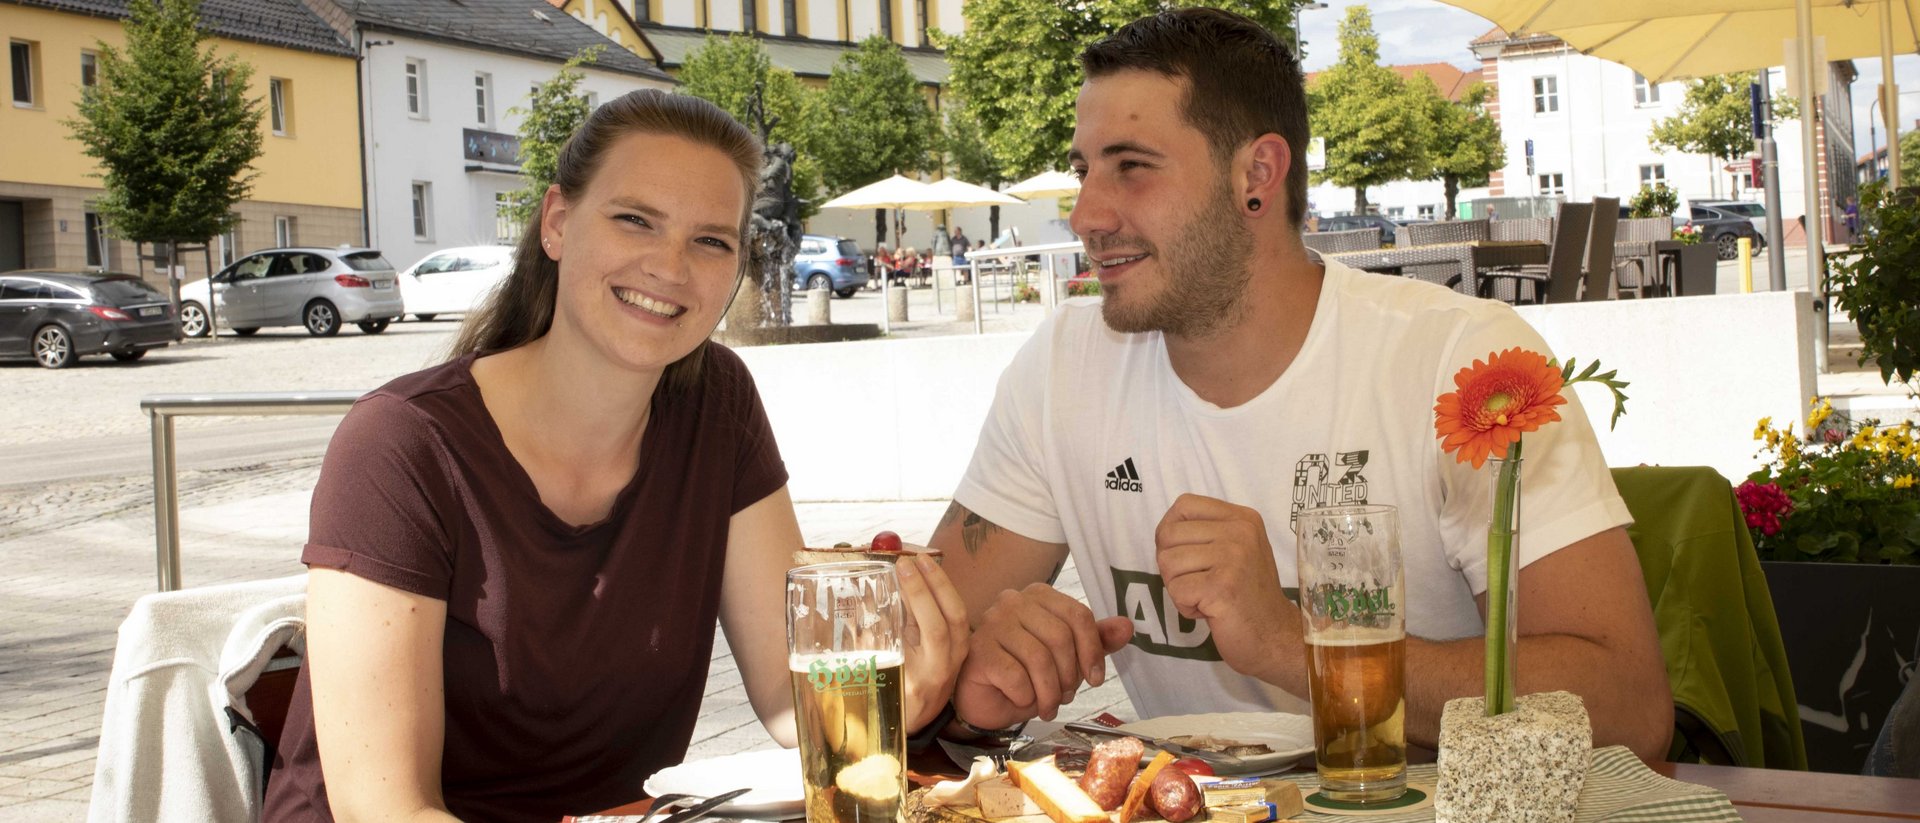 Ein Mann und eine Frau sitzen am Marktplatz Mitterteich. Auf dem Tisch vor ihnen befinden sich zwei Gläser Zoigl-Bier.